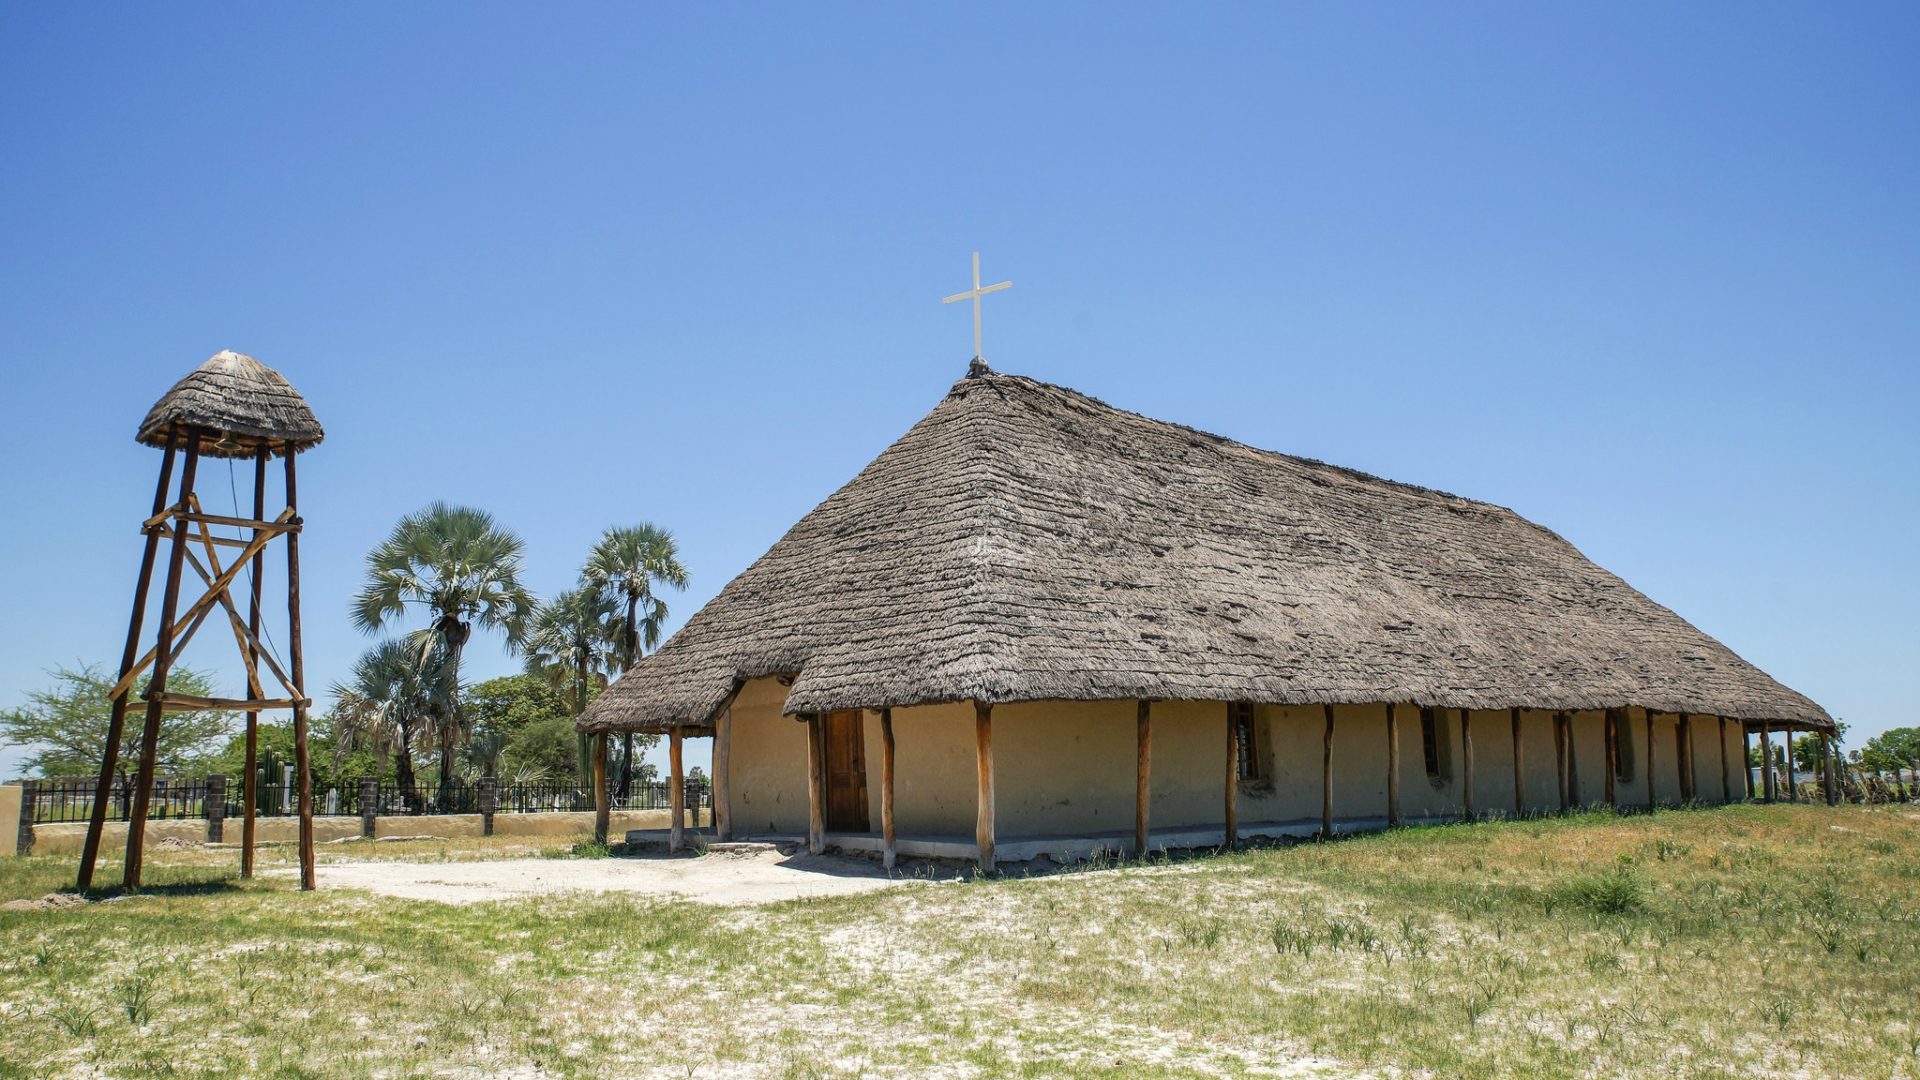 Les Eglises en Namibie luttent souvent pour leur survie (Photo: Timo/Flickr/CC BY-NC-ND 2.0)